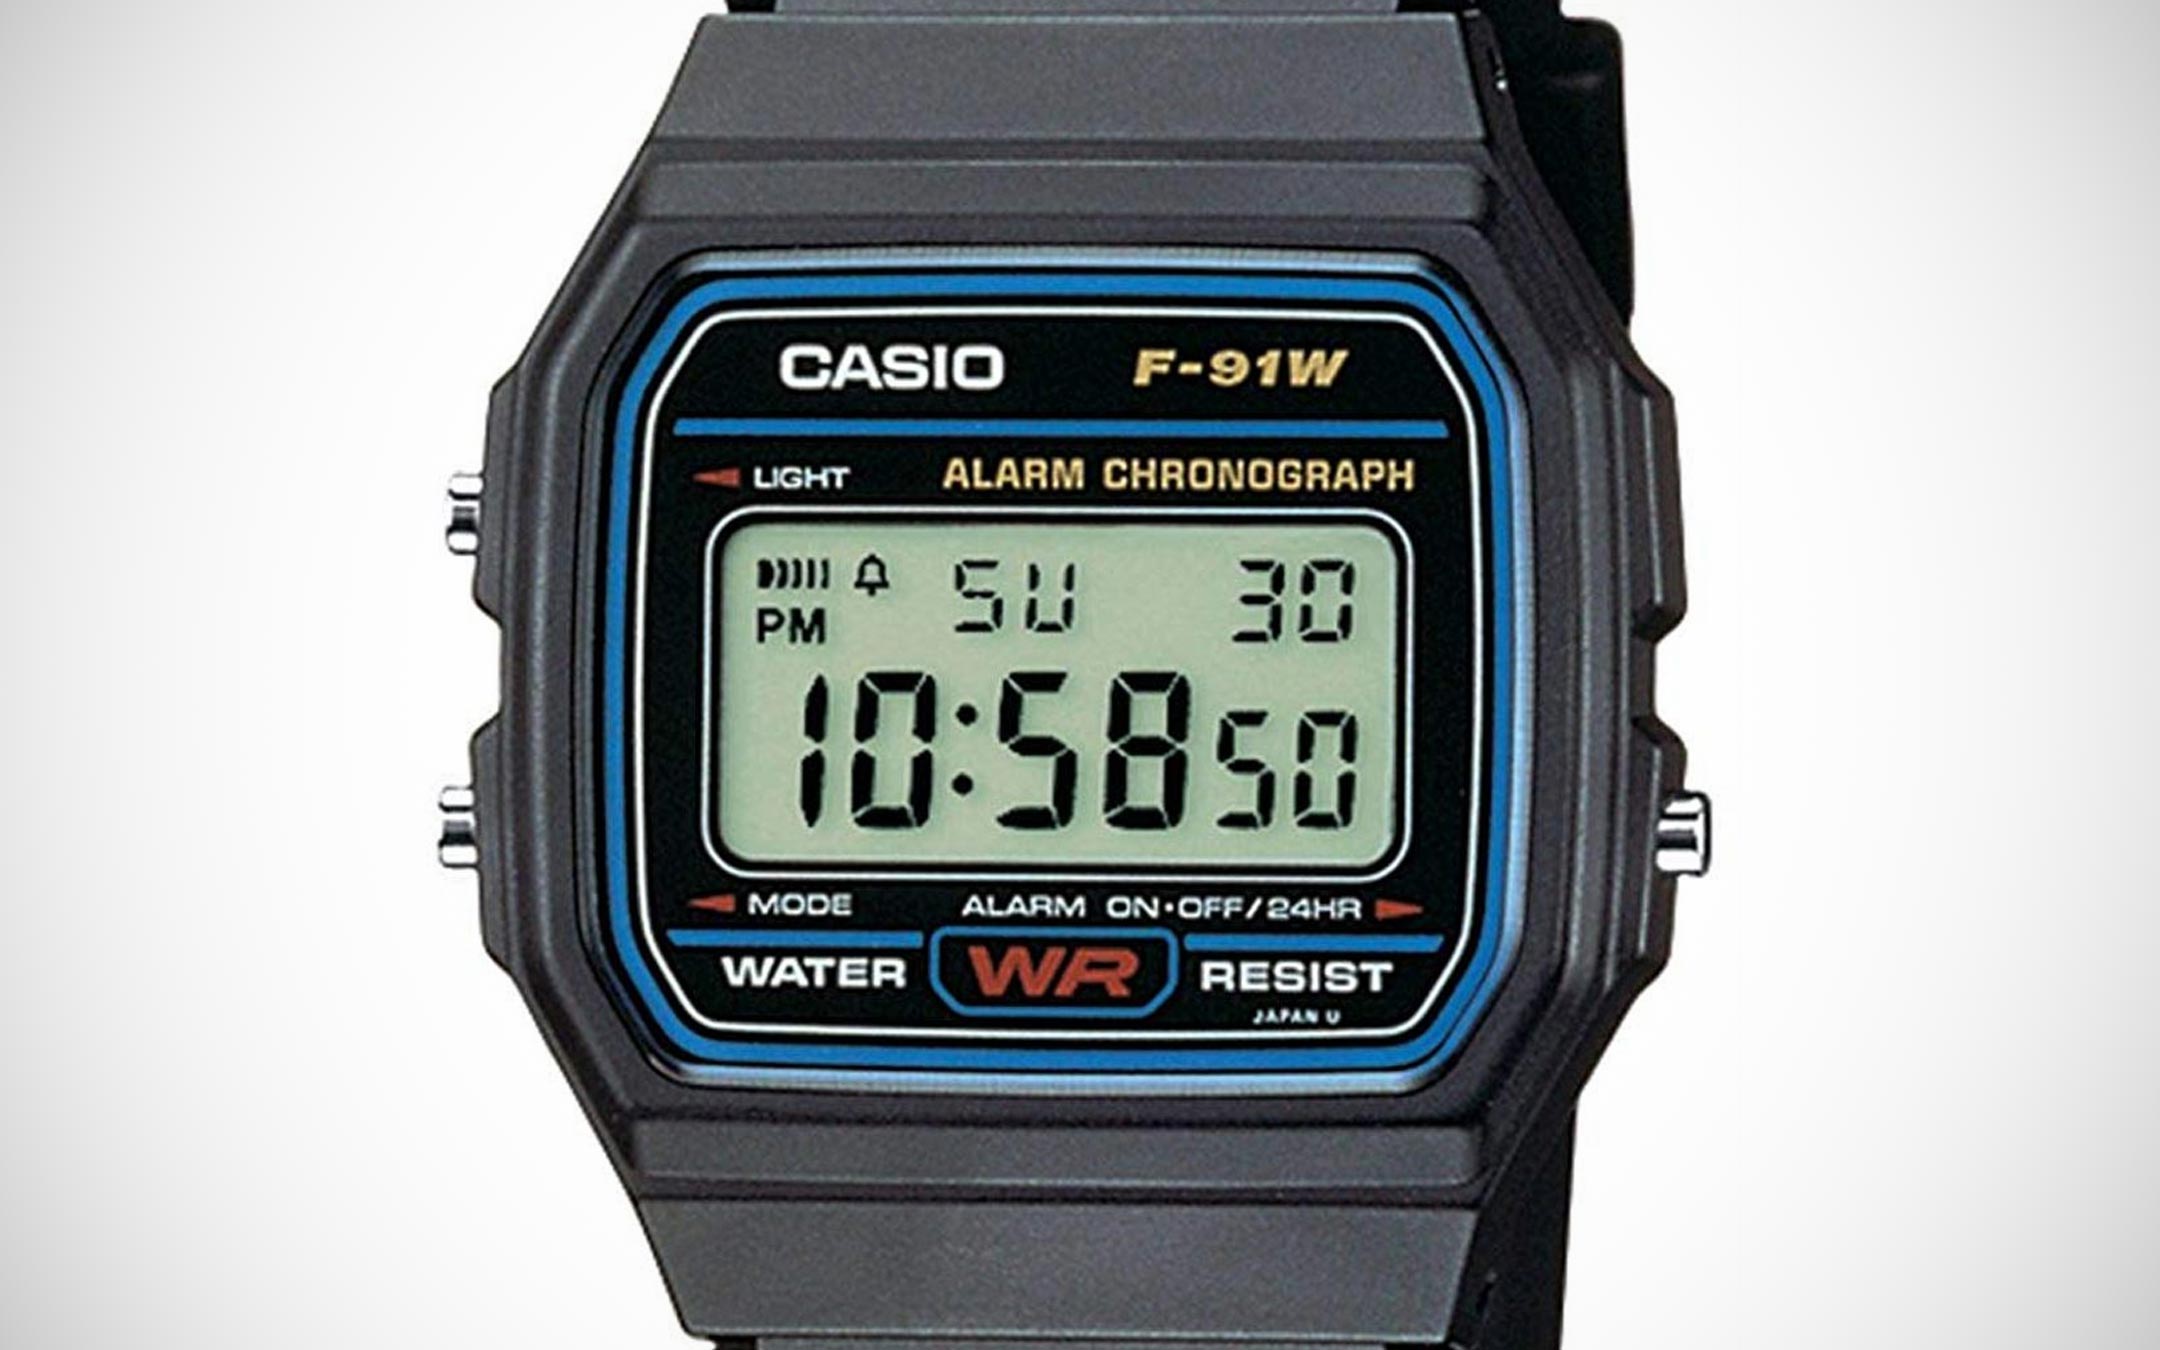 L’orologio digitale CASIO F-91W, un classico senza tempo, a soli 9,99 euro